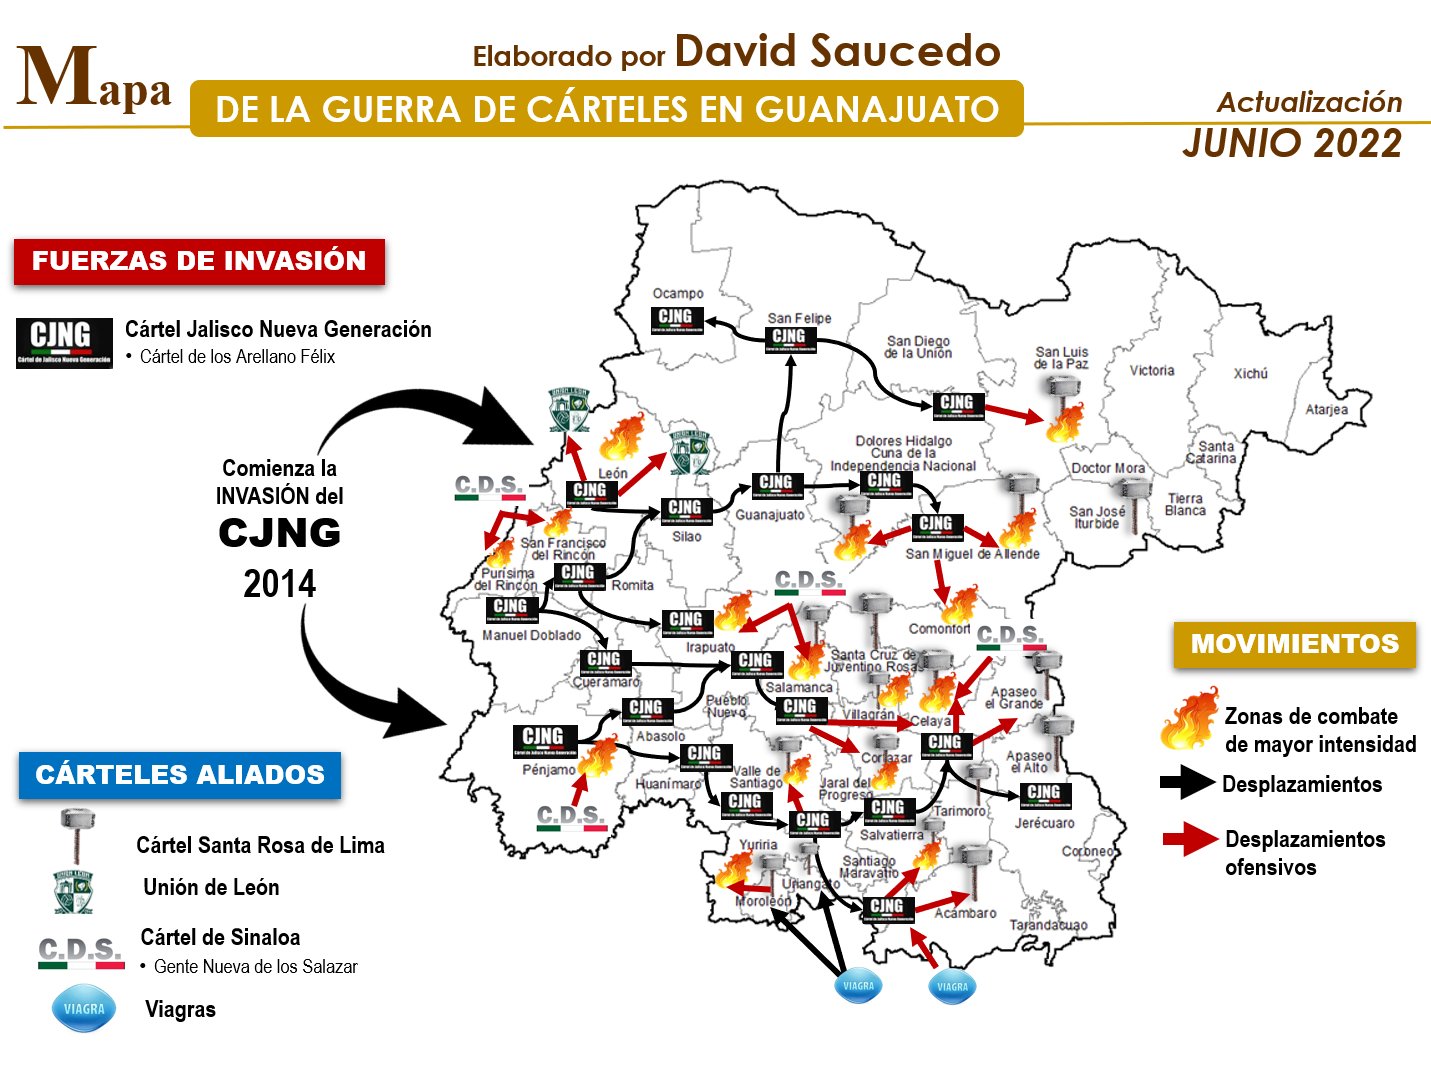 Foto: La cartografía de la guerra en Guanajuato (Imagen:TW@David_Saucedo_)
